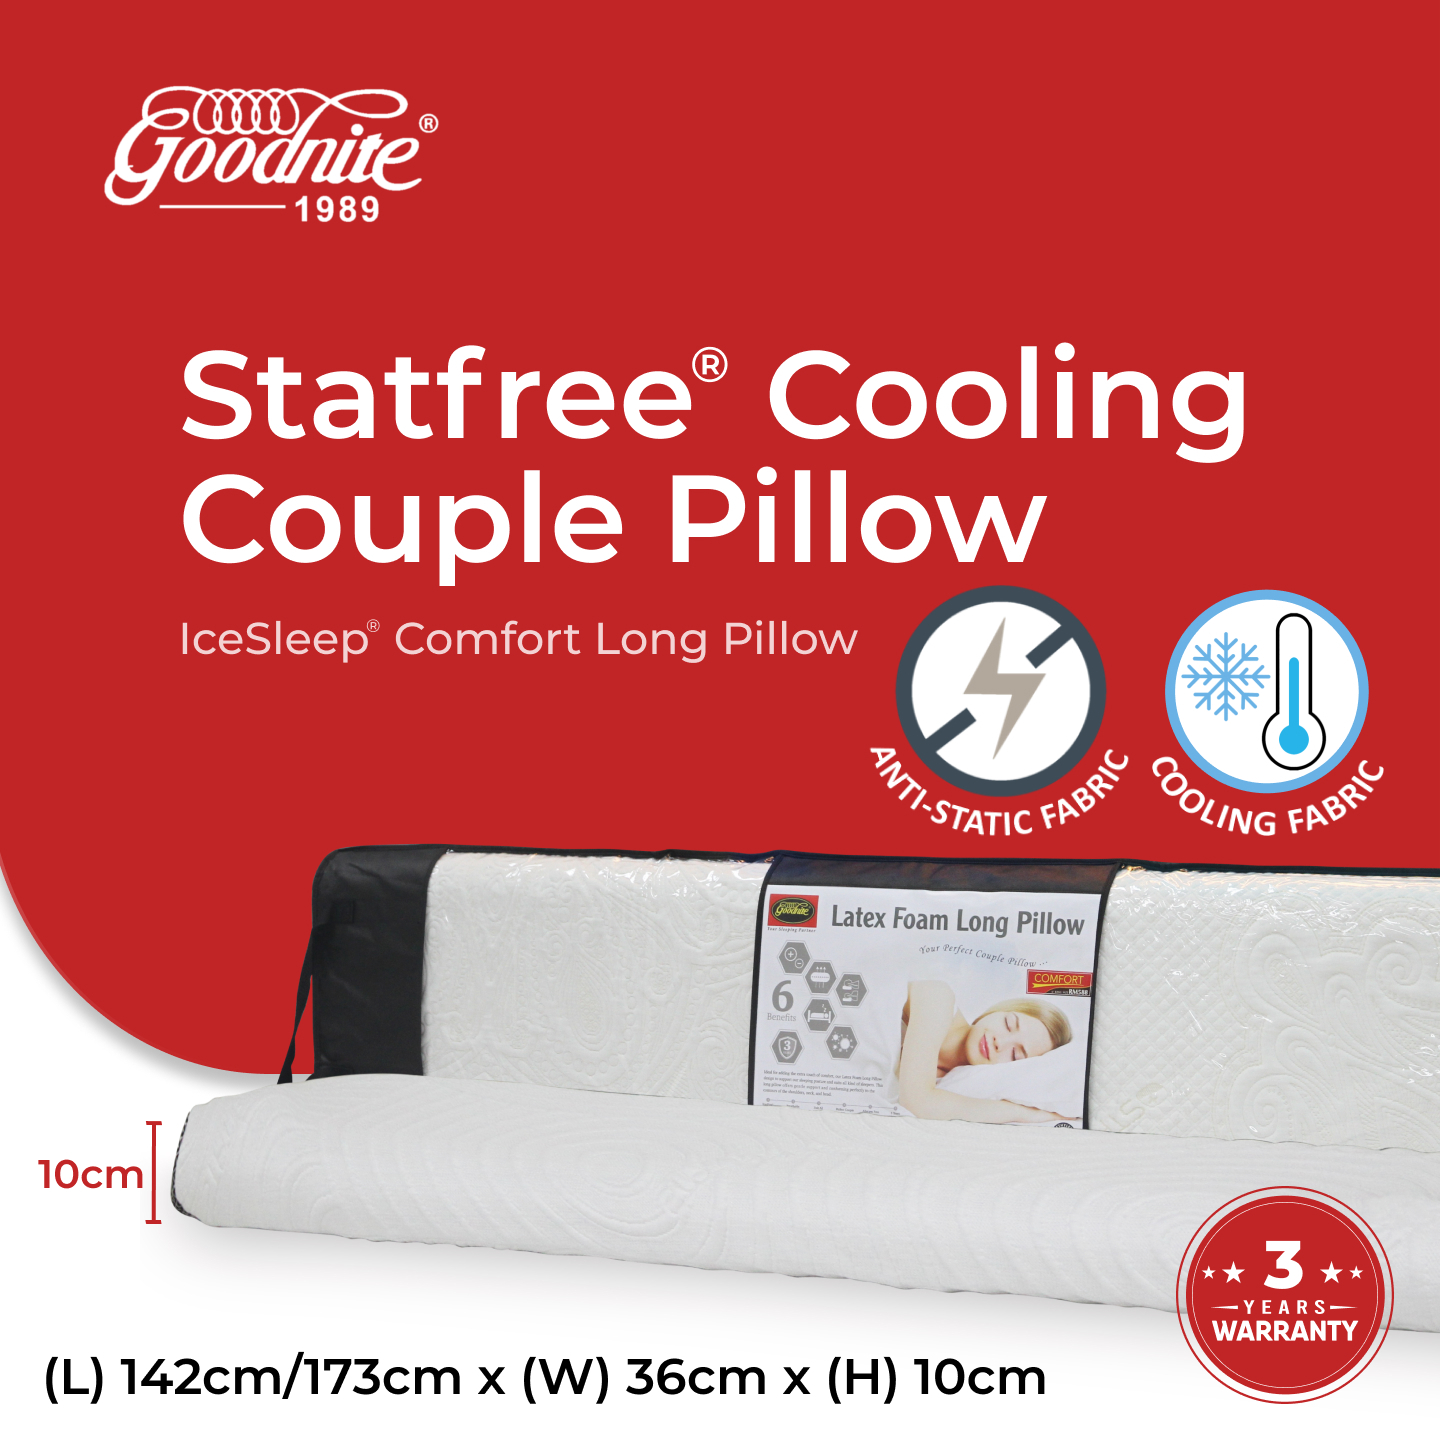 IceSleep Comfort Long Pillow M.jpg